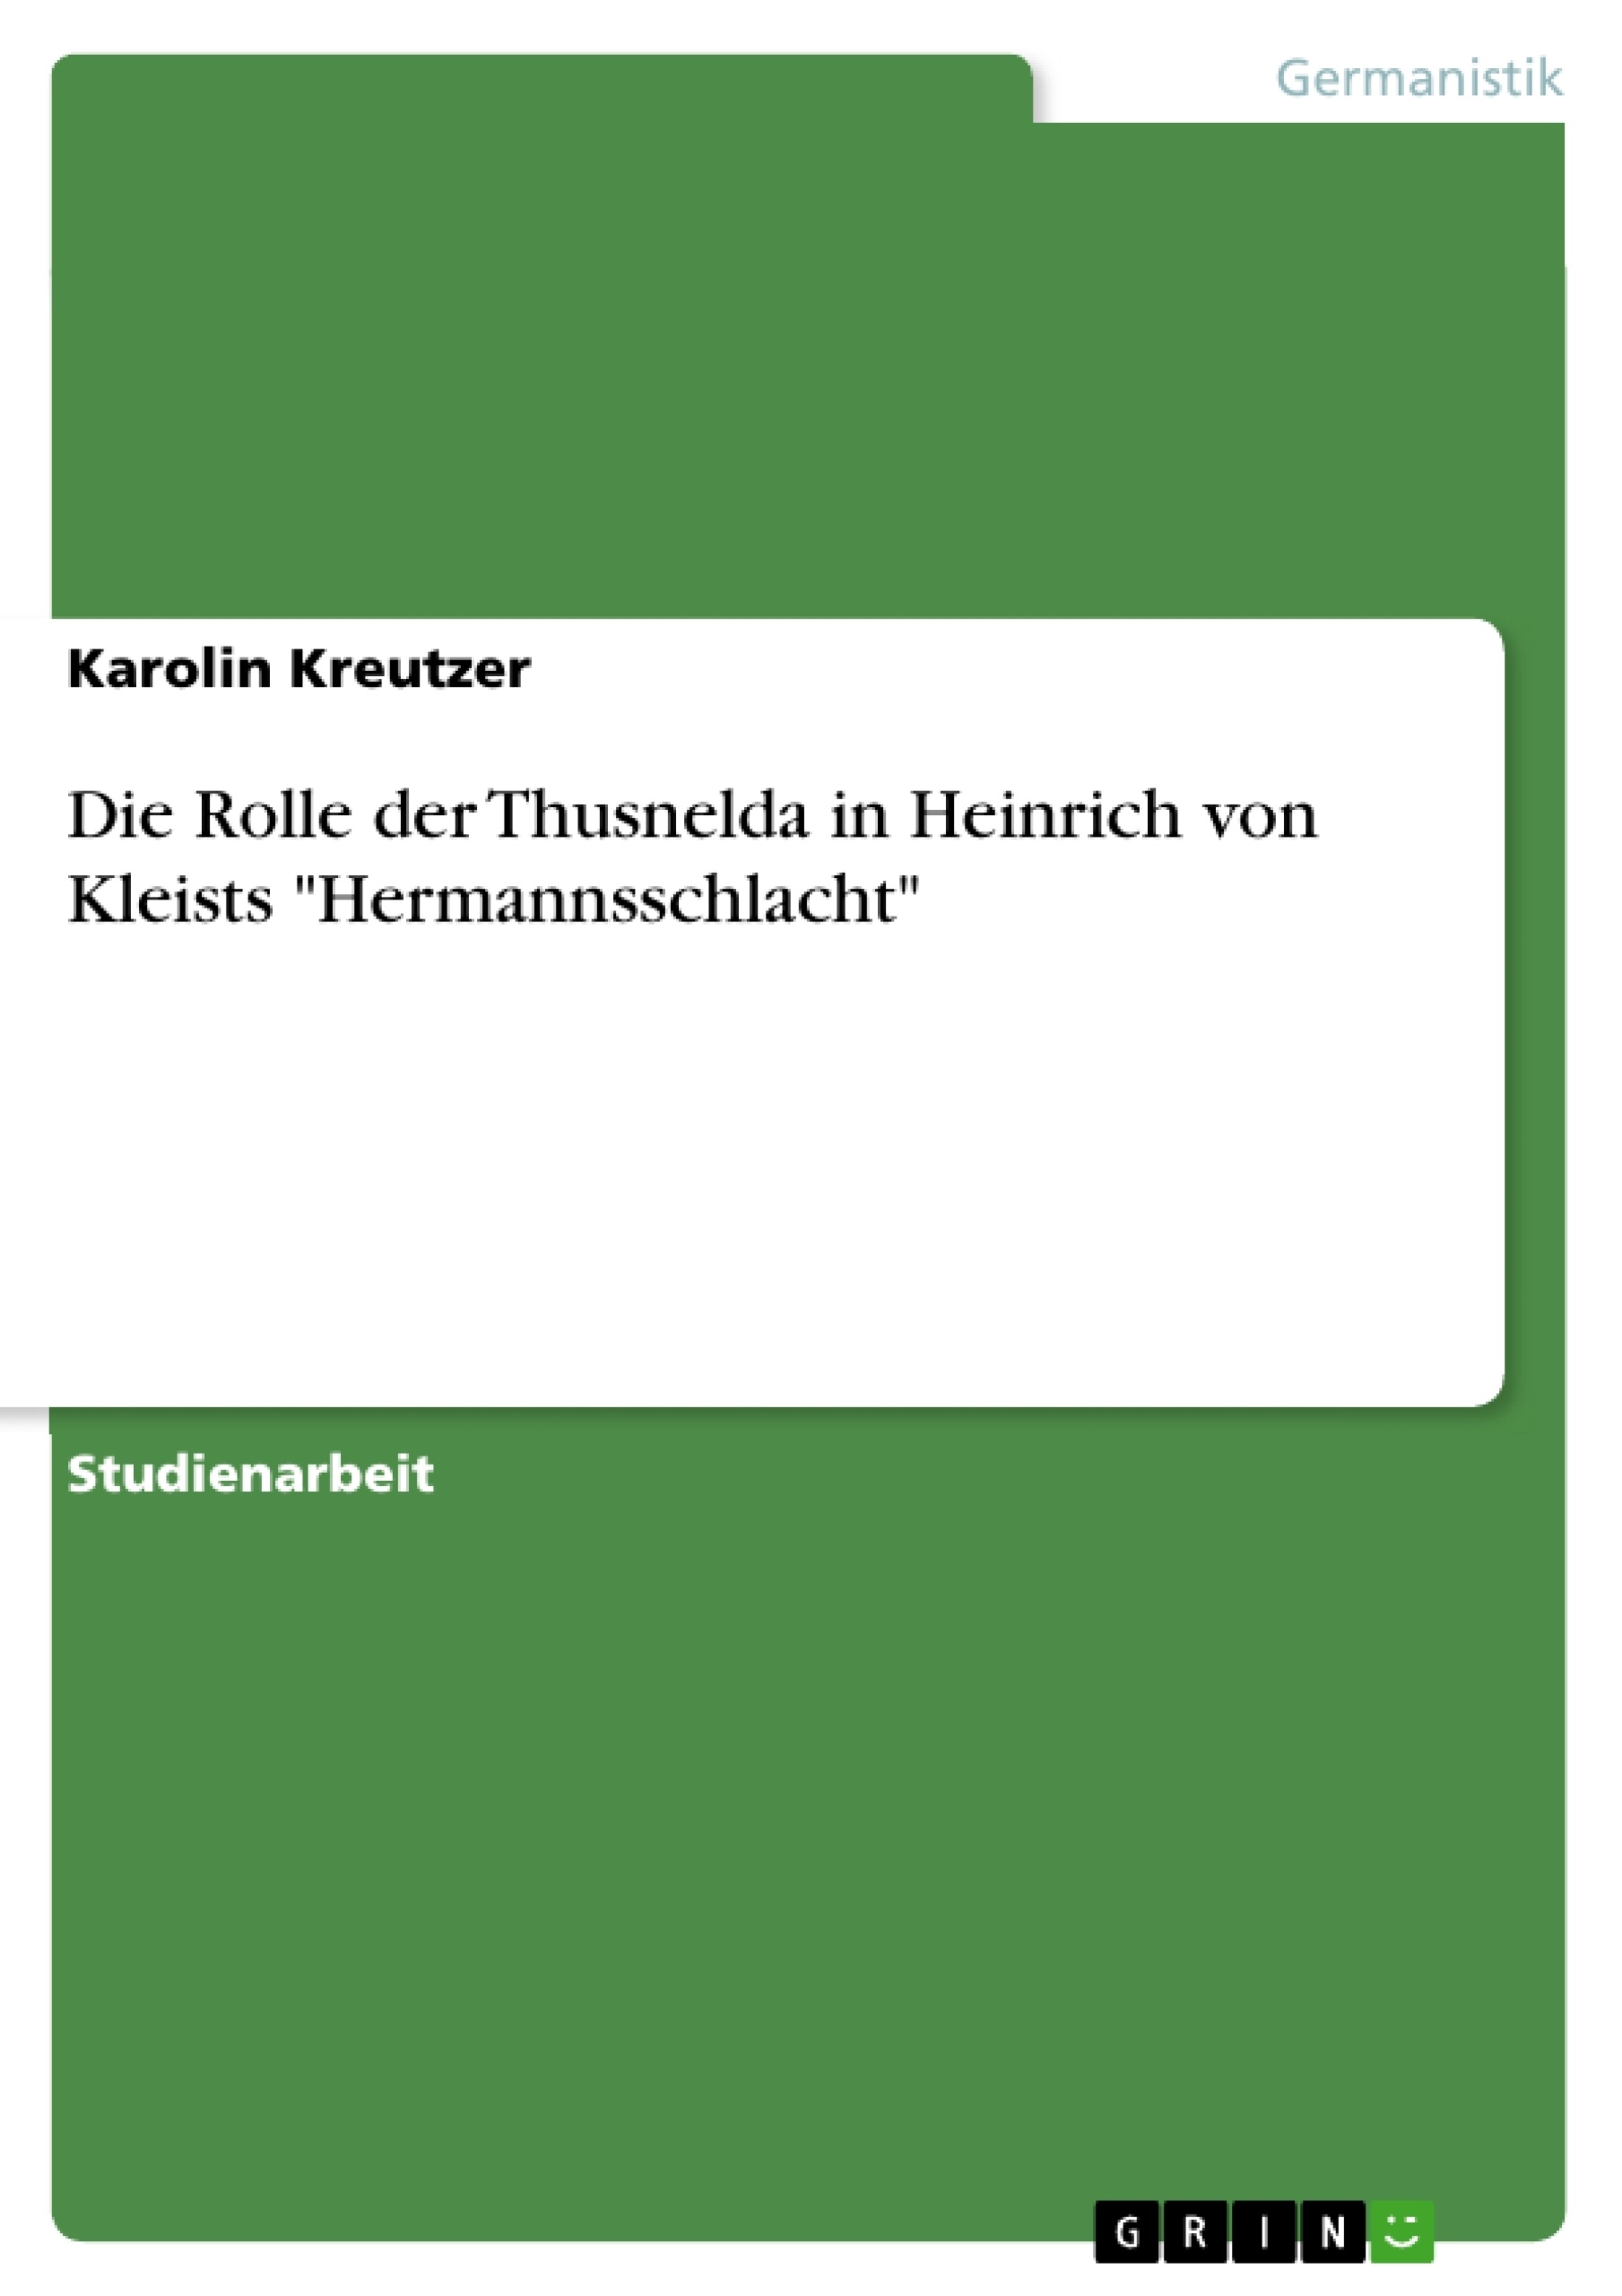 Titre: Die Rolle der Thusnelda in Heinrich von Kleists "Hermannsschlacht"